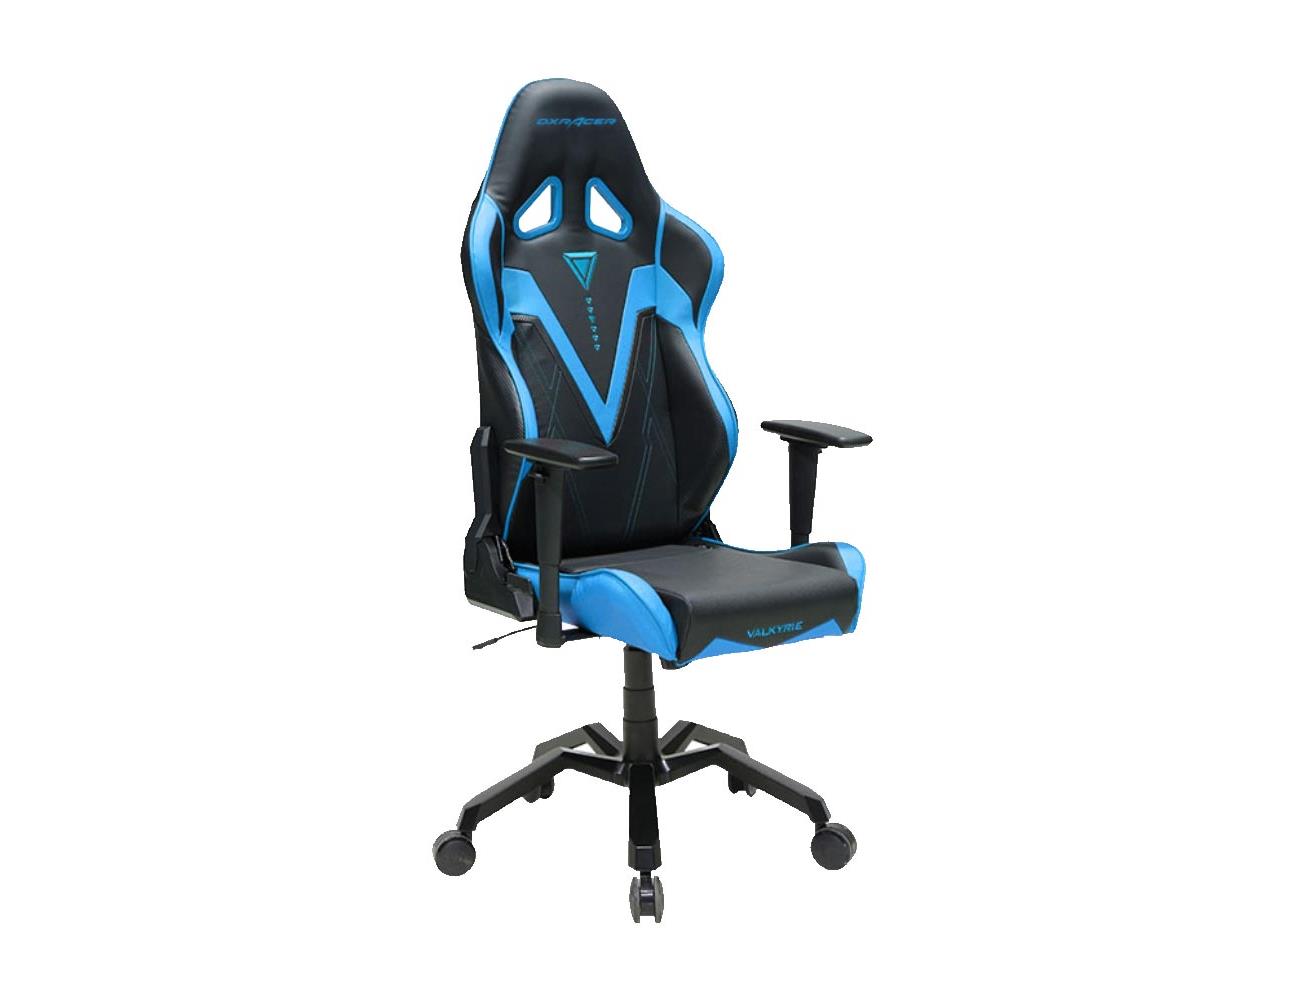 DXRacer Valkyrie Series Gaming Chair - Black/Blue| Blink Kuwait